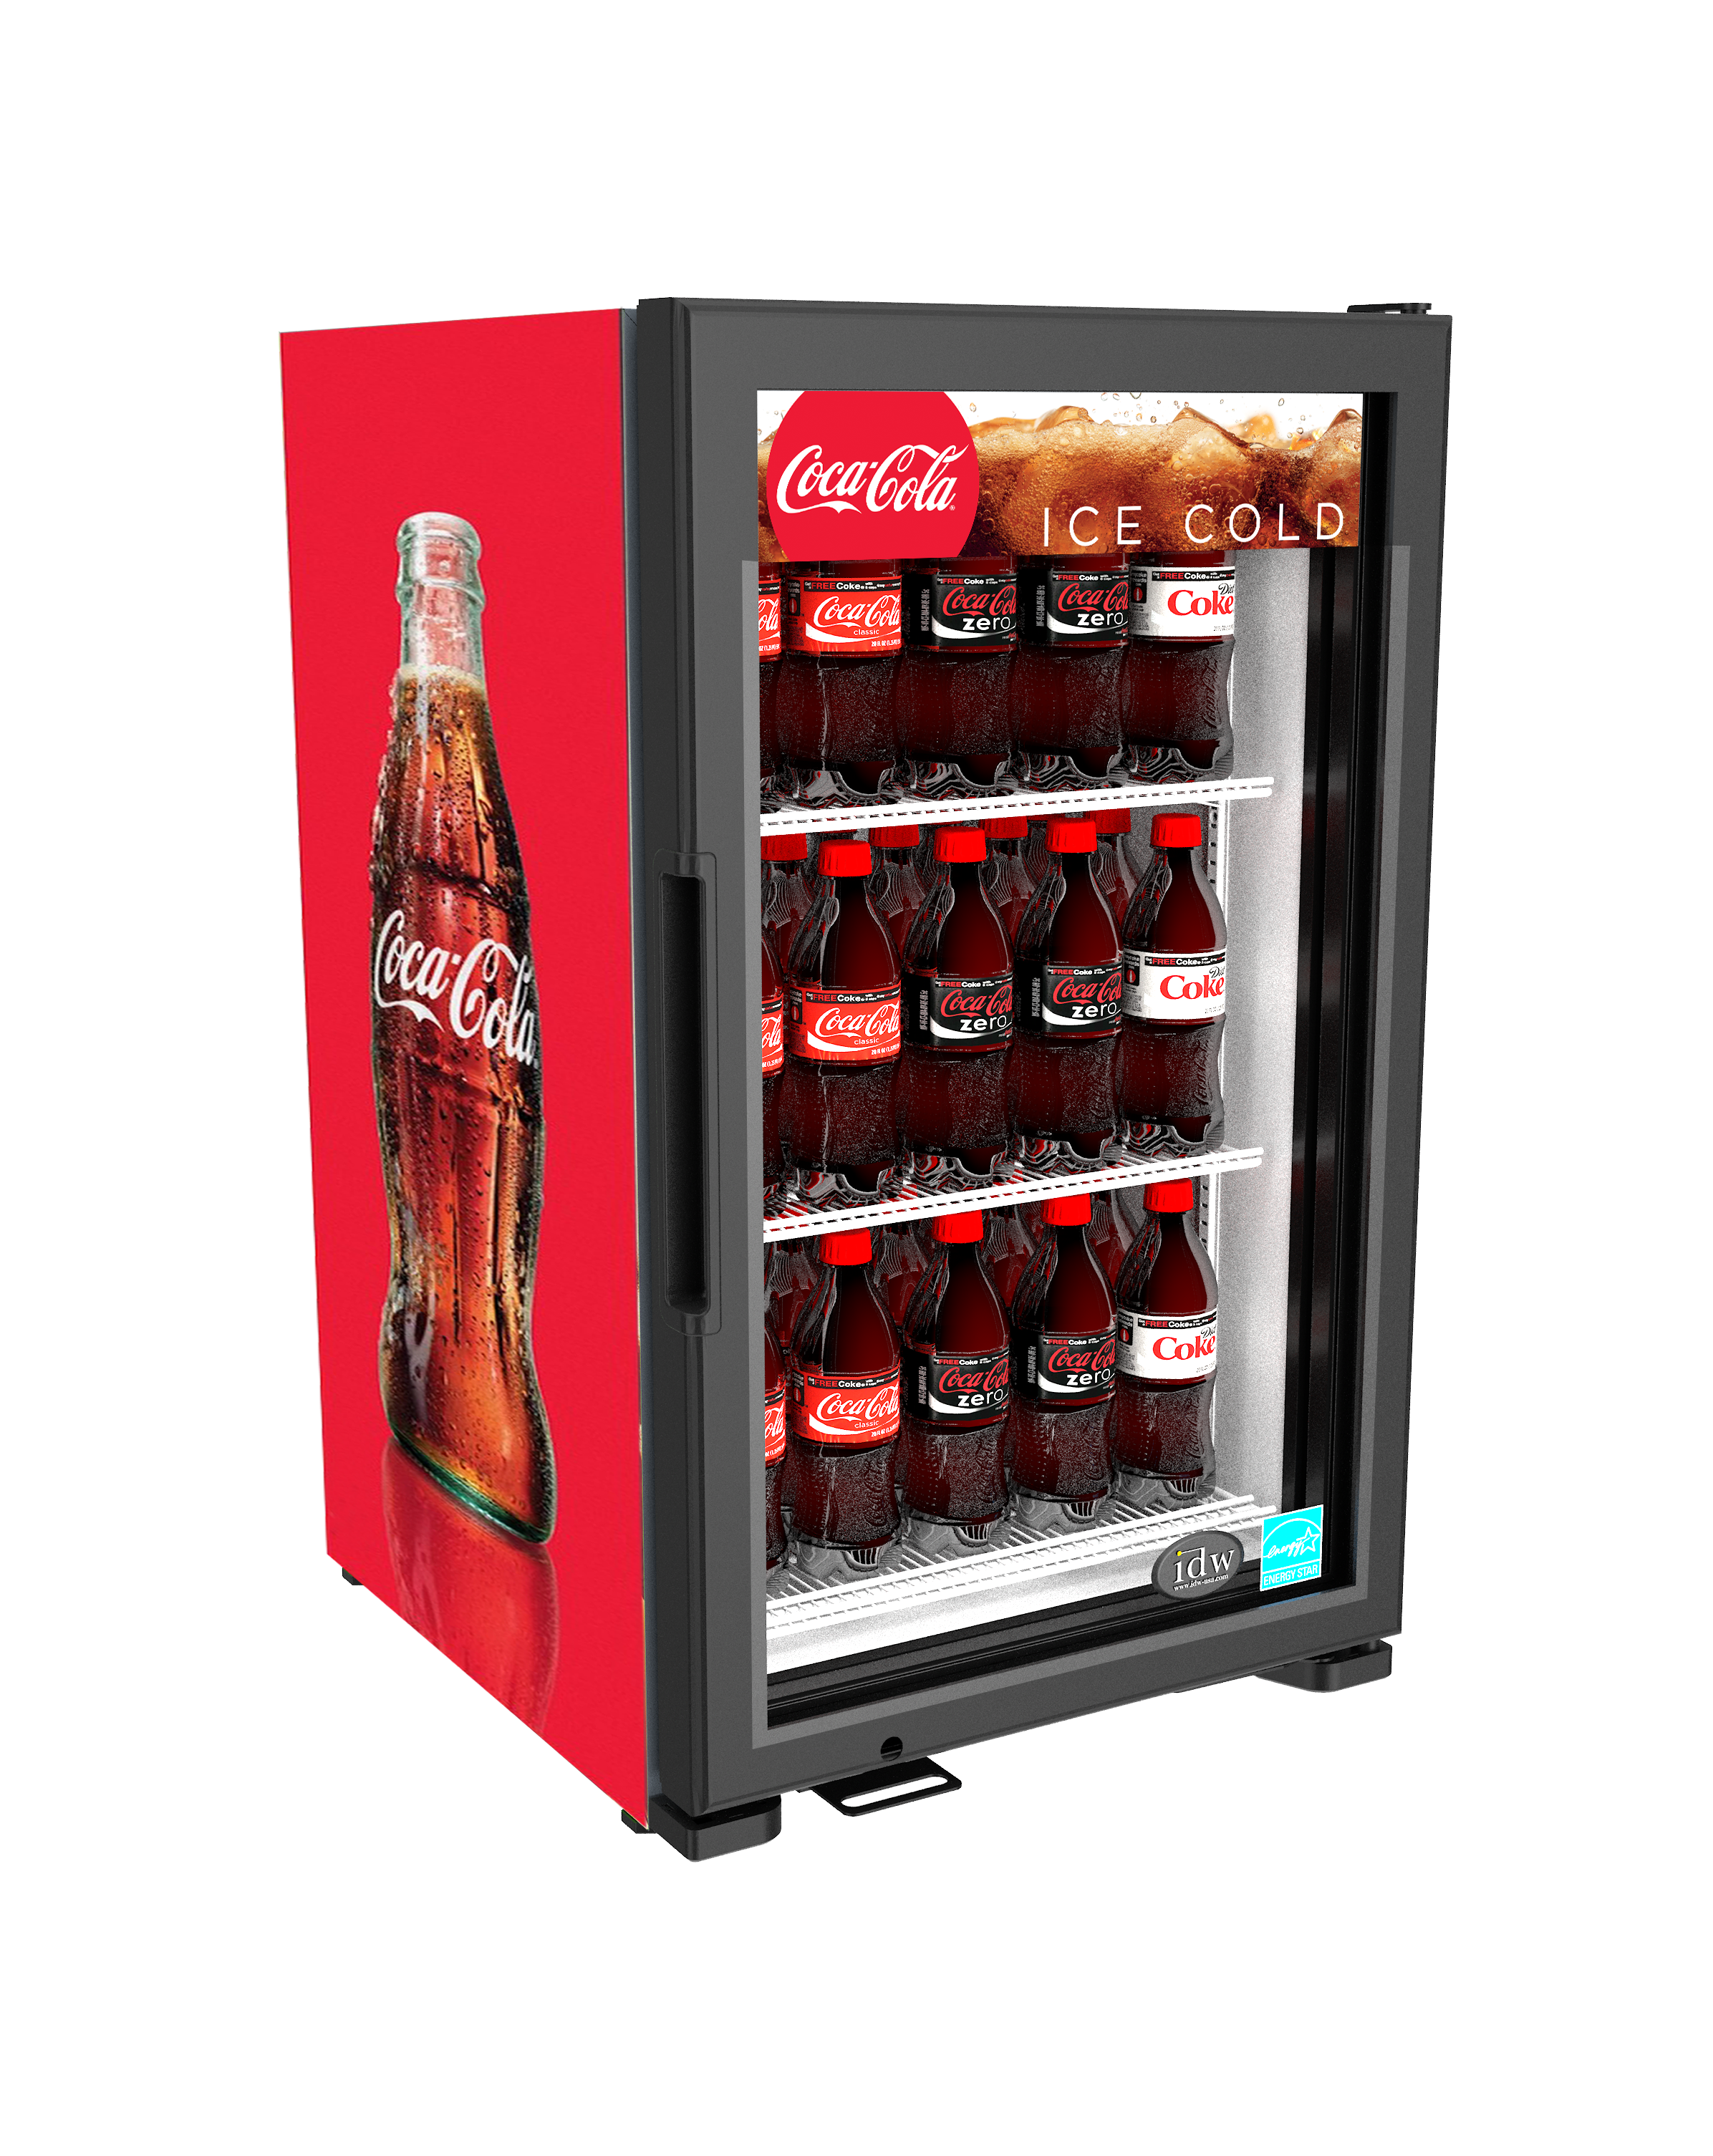 42+ Coca cola refrigerator power consumption ideas